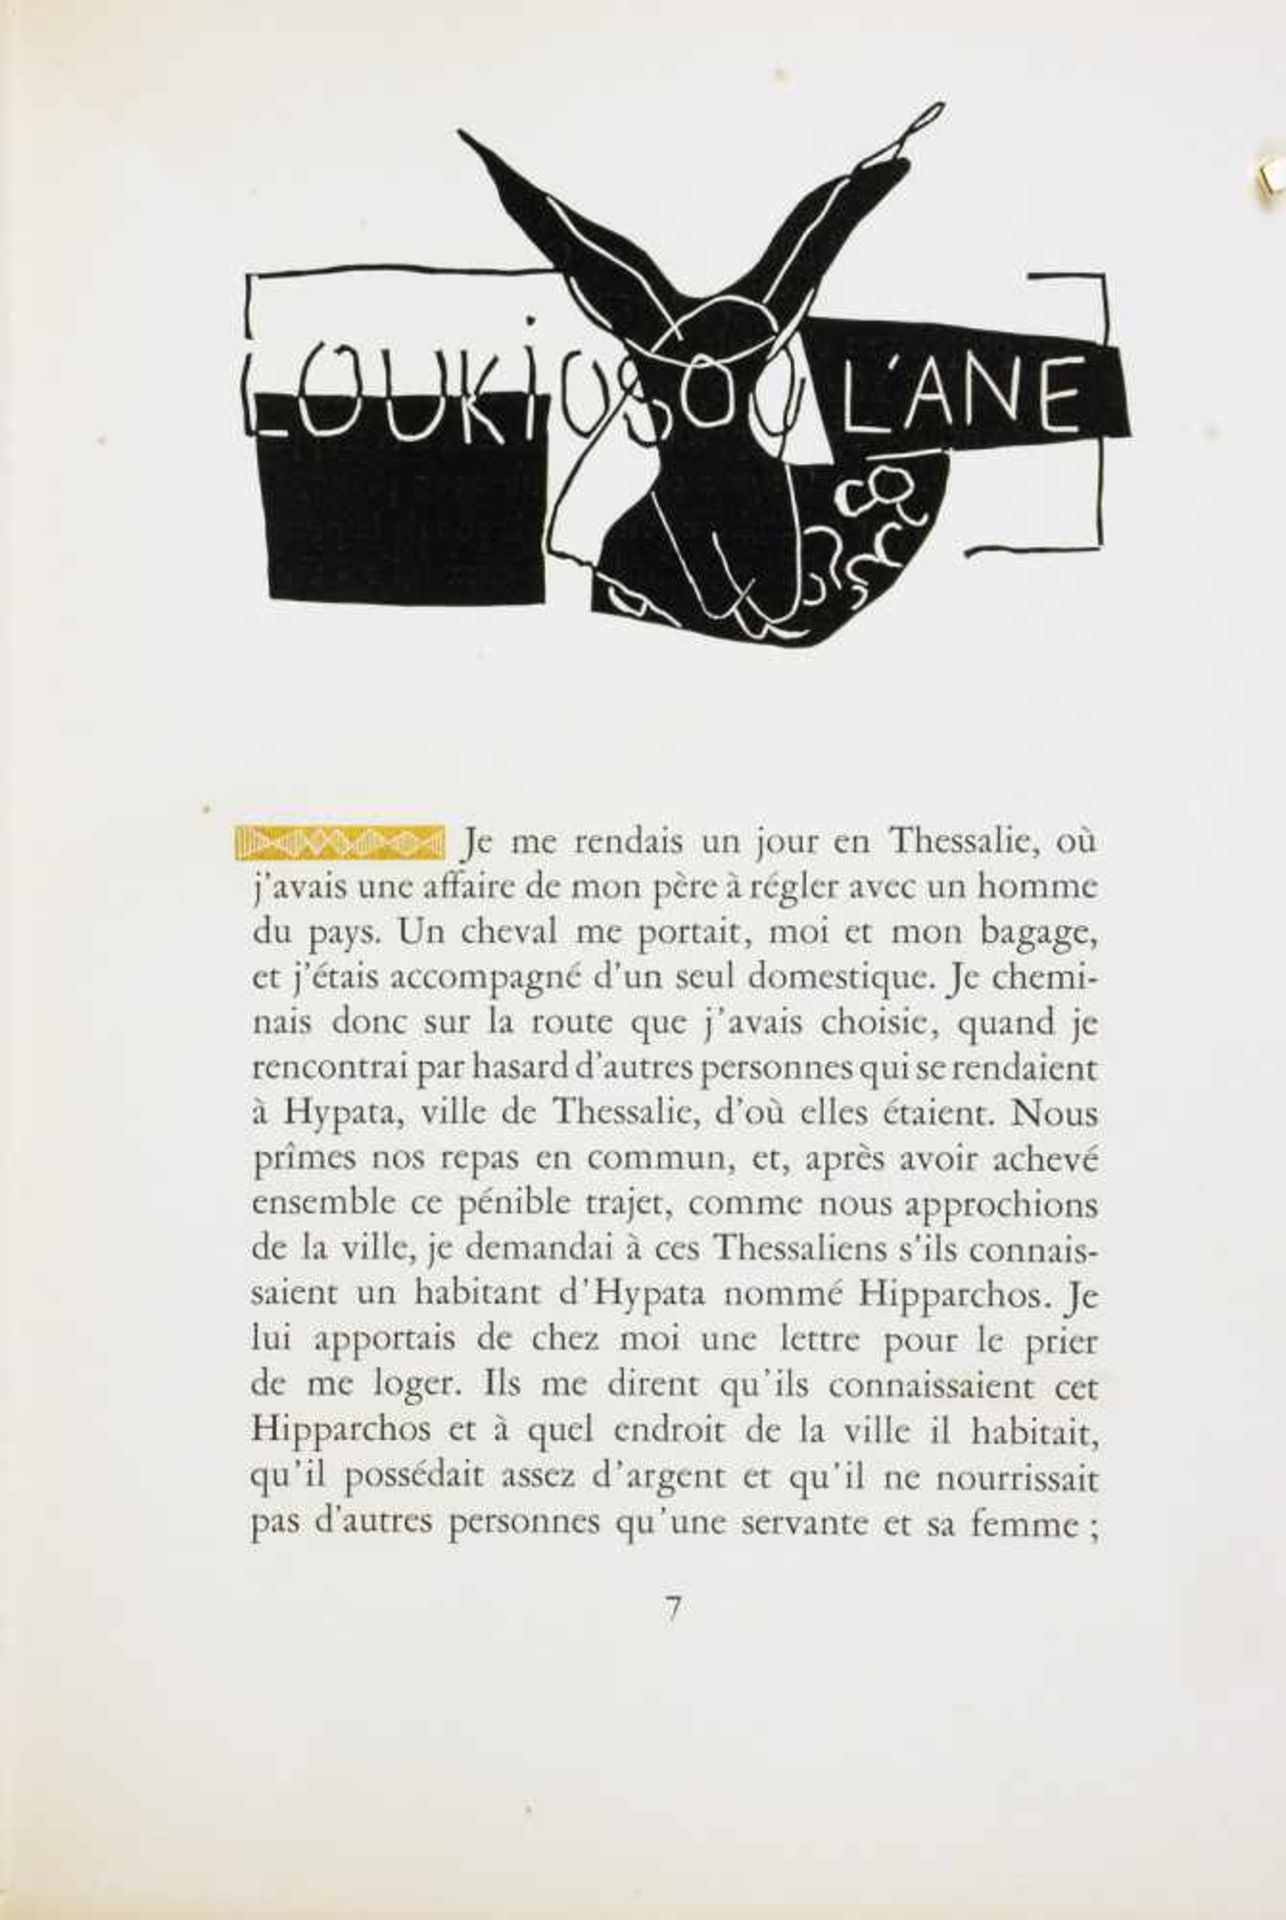 Henri Laurens - Lukian von Samosata. Loukios ou l'ane. Bois originaux de Henri Laurens. Paris, - Image 3 of 4